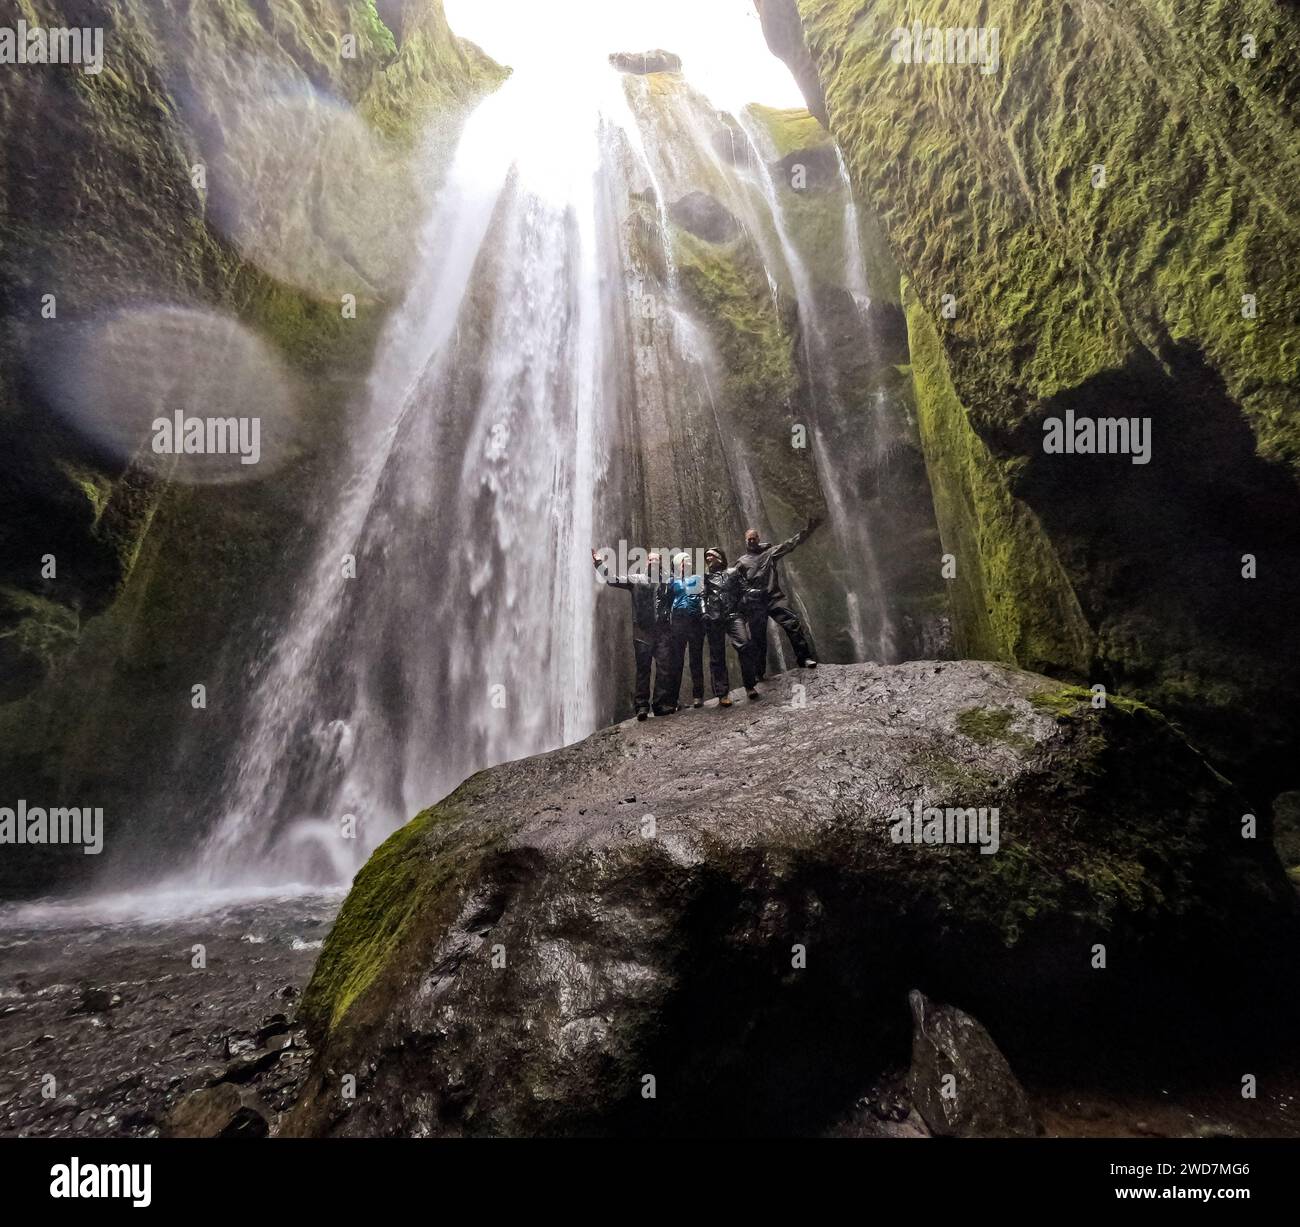 Gruppo di adulti su un'enorme roccia con una cascata che scende dalle scogliere Foto Stock